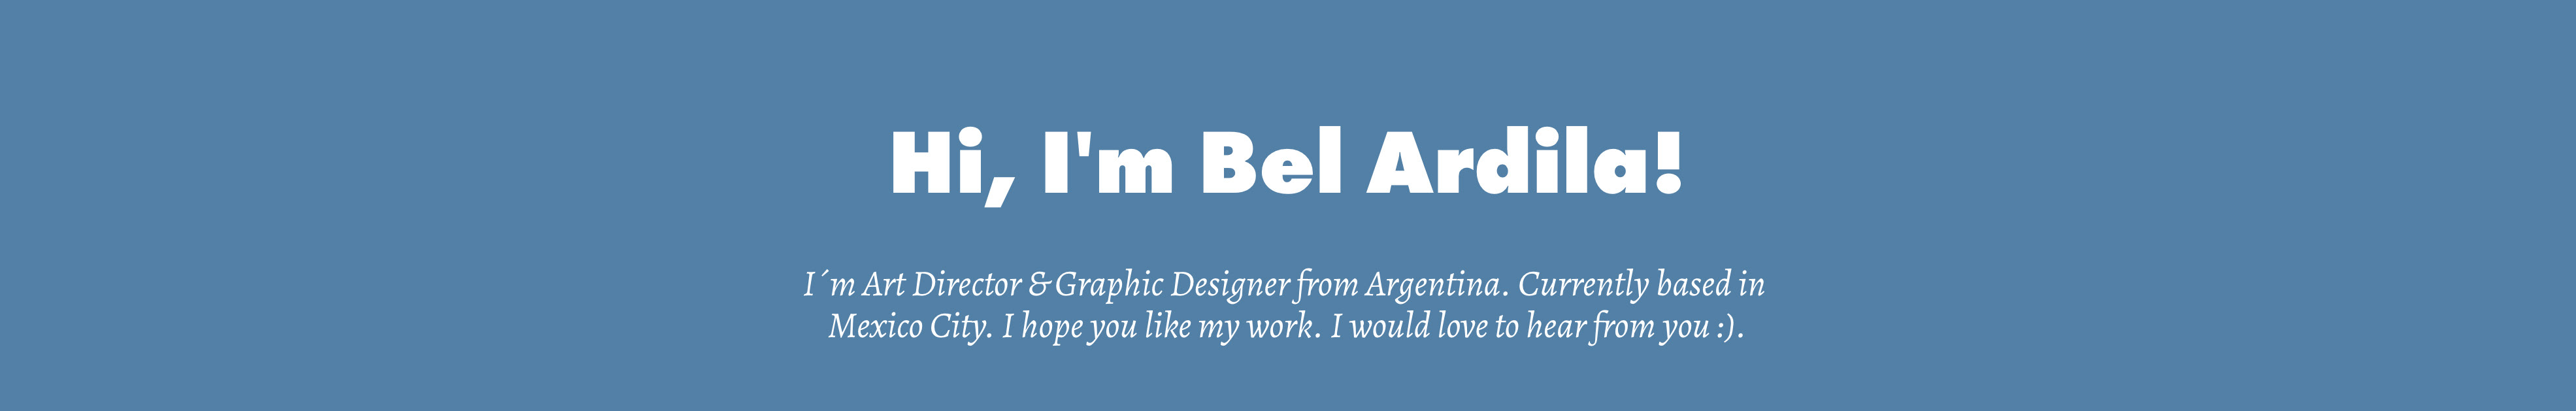 Bel Ardila's profile banner